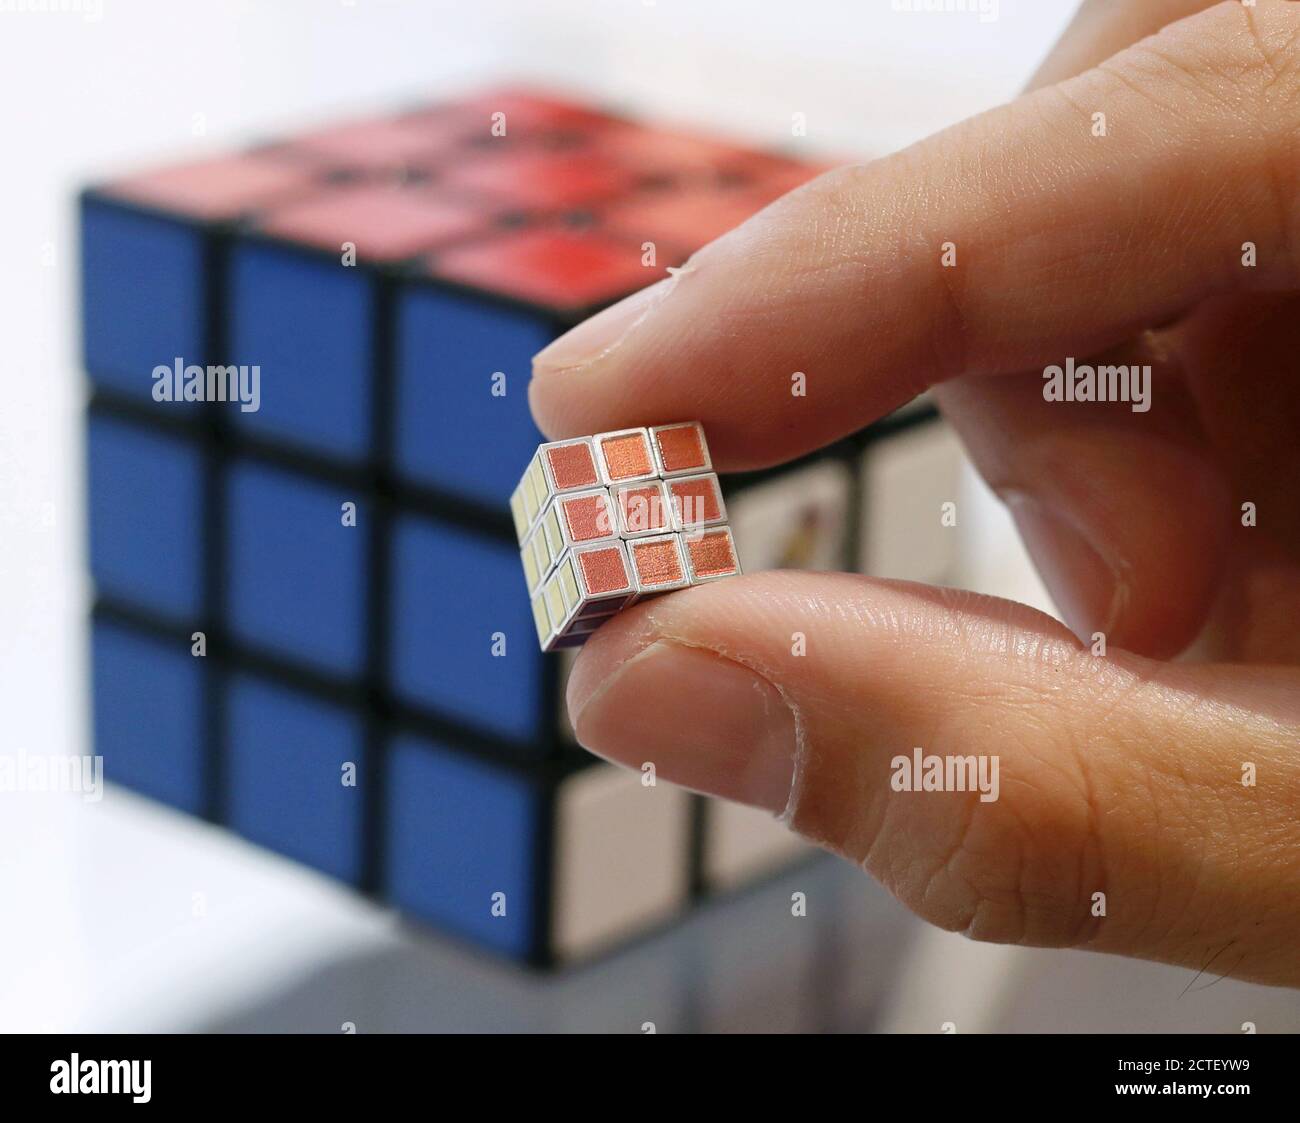 Tokyo, Giappone. 23 Settembre 2020. Photo taken 23 settembre 2020, mostra il  cubo di Rubik più piccolo del mondo, lungo 9.9 millimetri, svelato ai media  di Tokyo. Megahhouse Corp., una filiale del